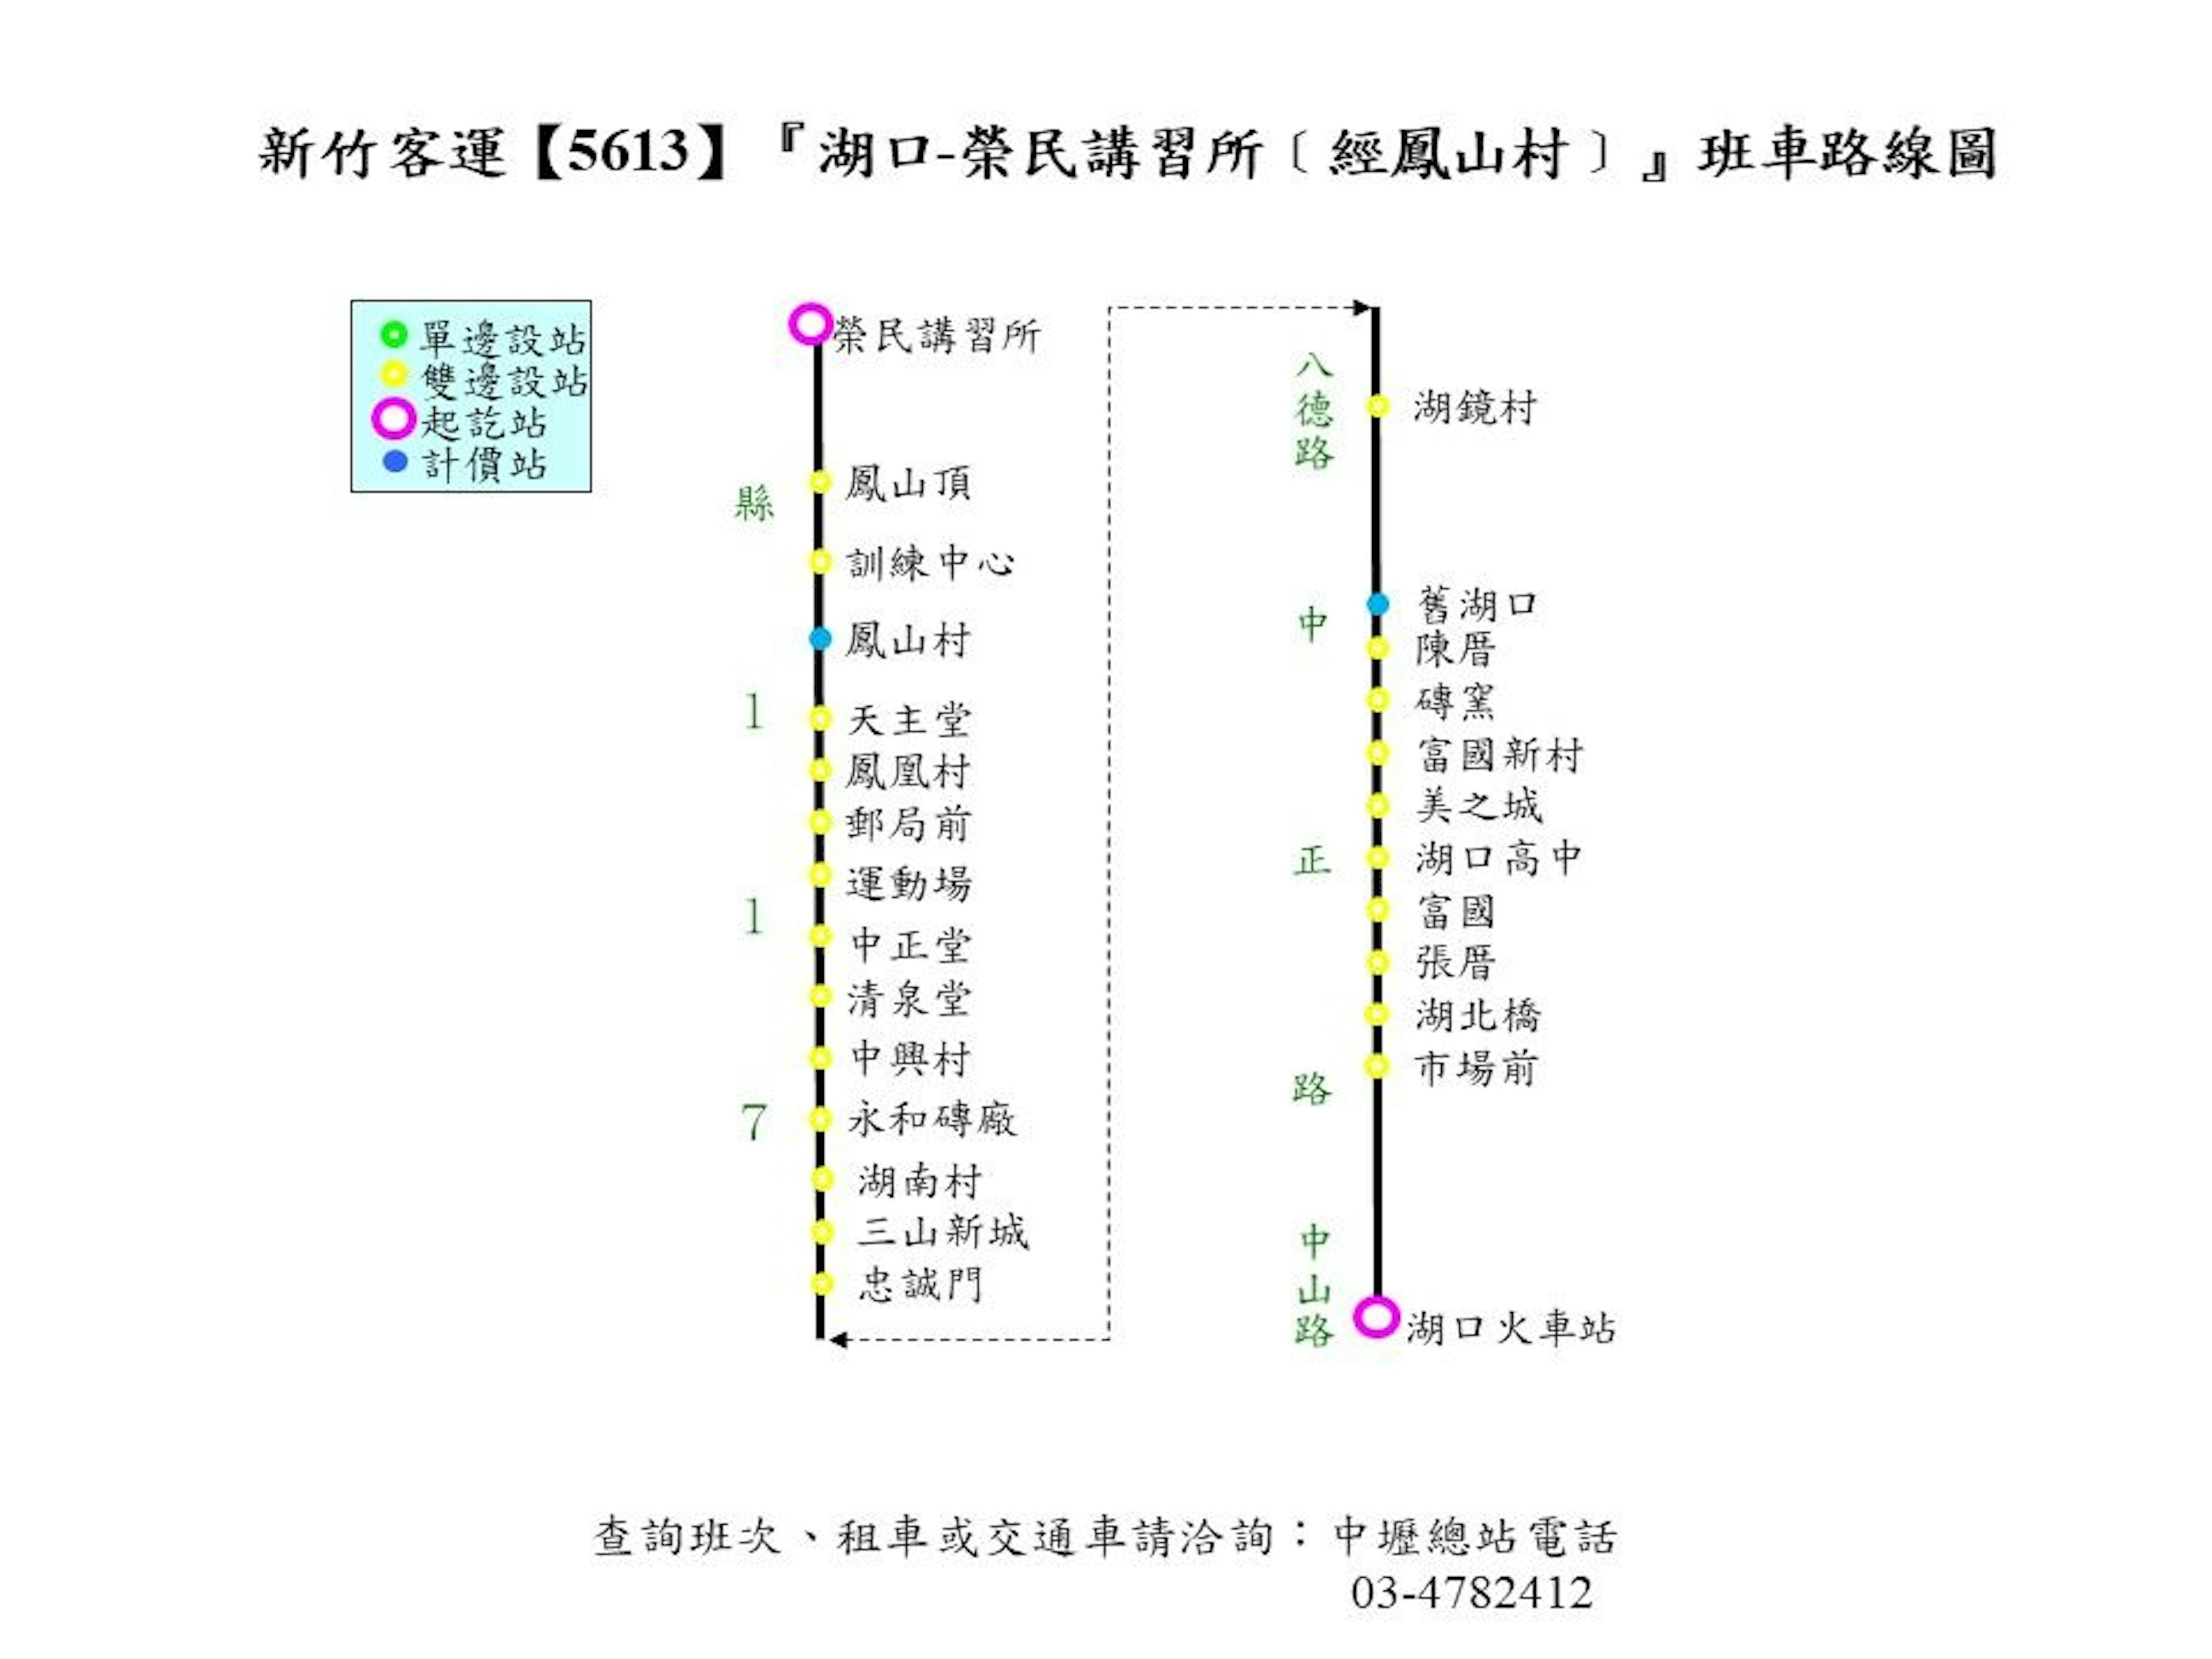 5613Route Map-Hsinchu Bus